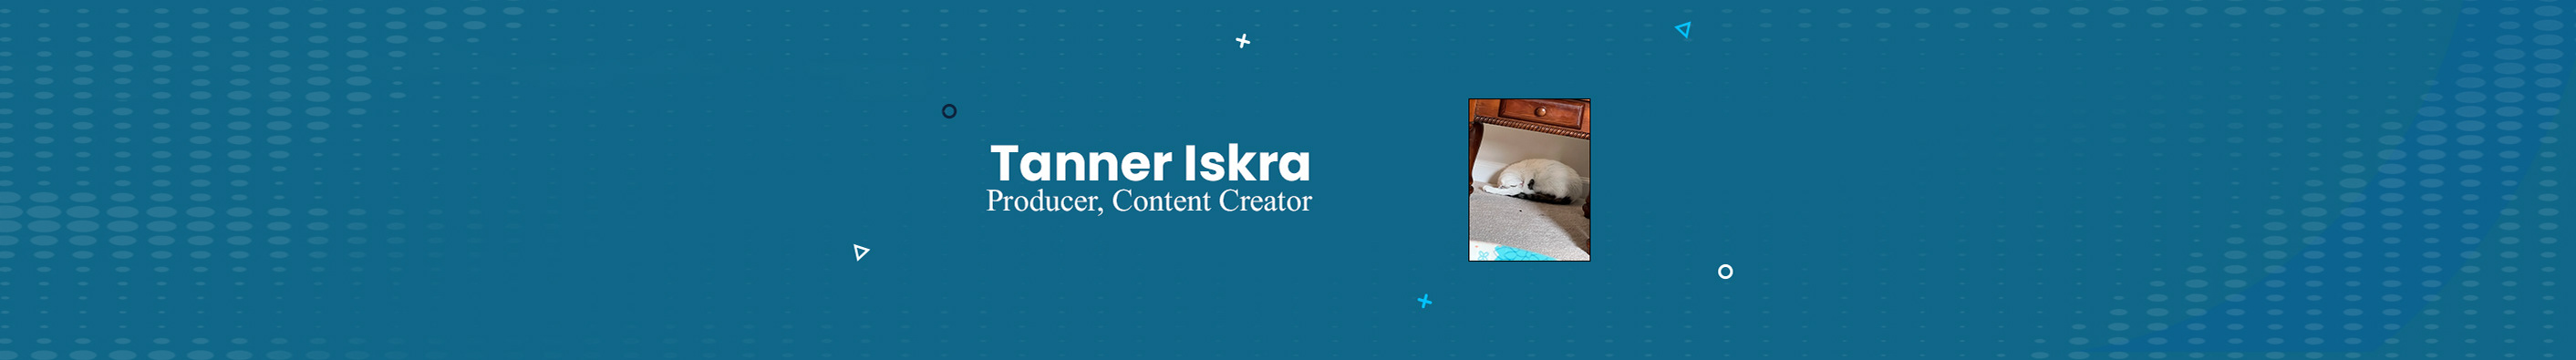 Tanner Iskra's profile banner